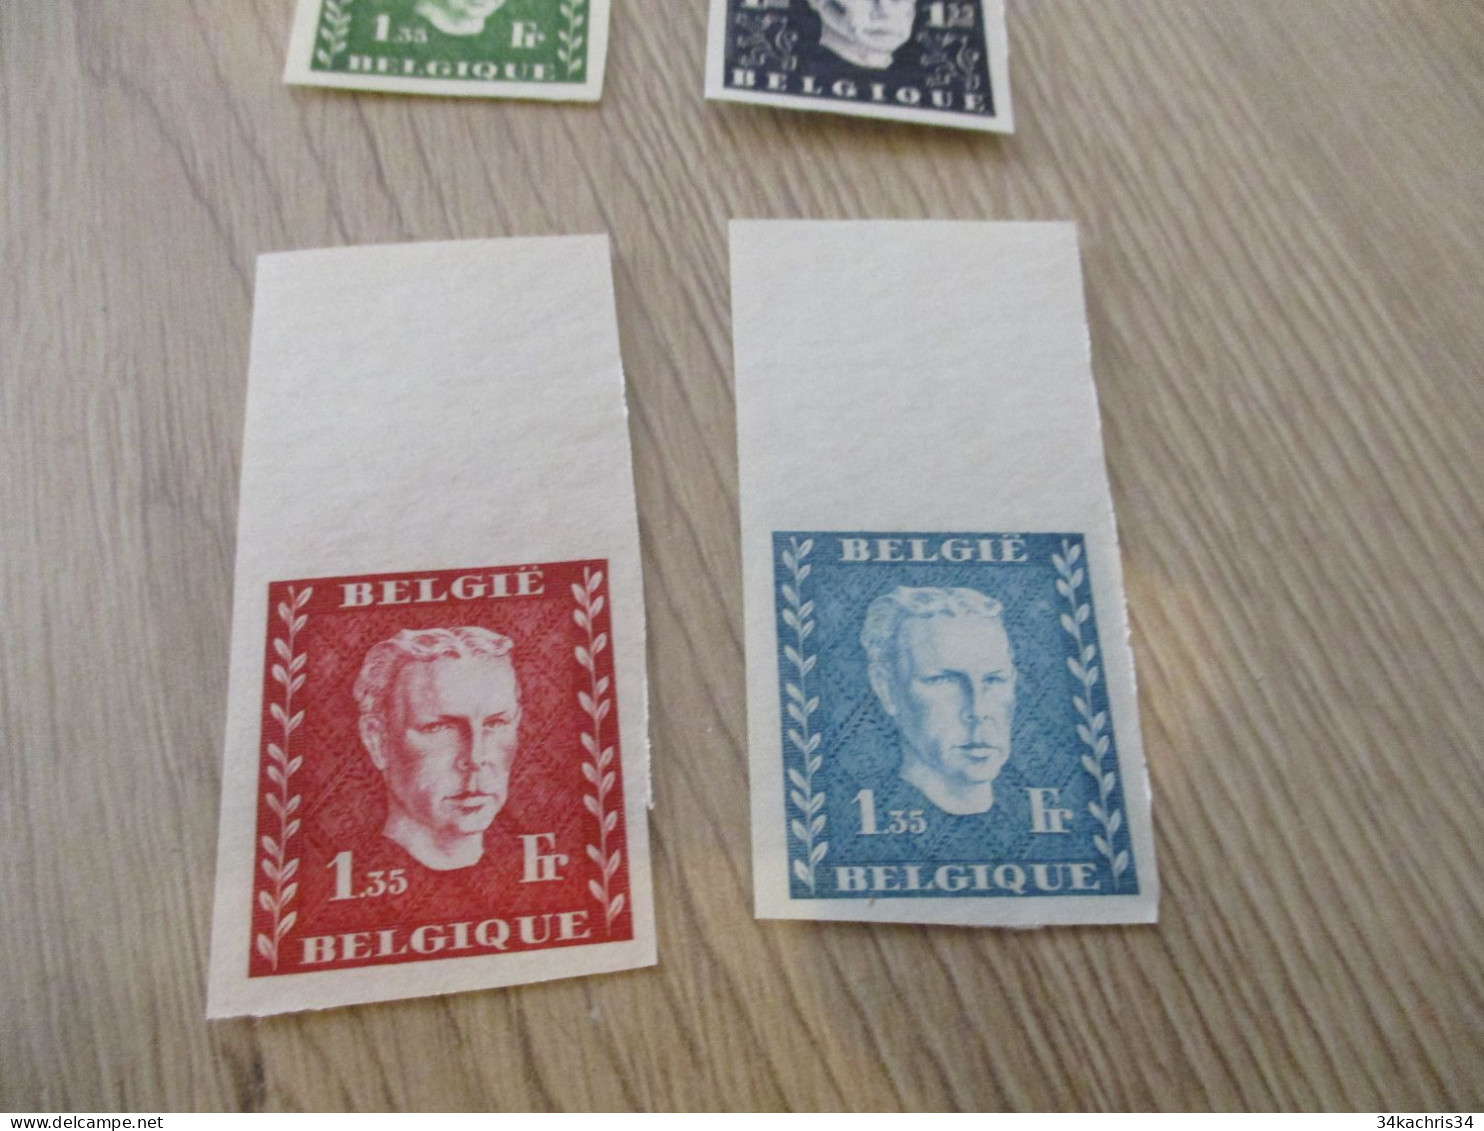 Essai - Prince Charles (1947) Belgique Belgie   4 Non Dentelés Sans Gomme Rare!!! - Proofs & Reprints